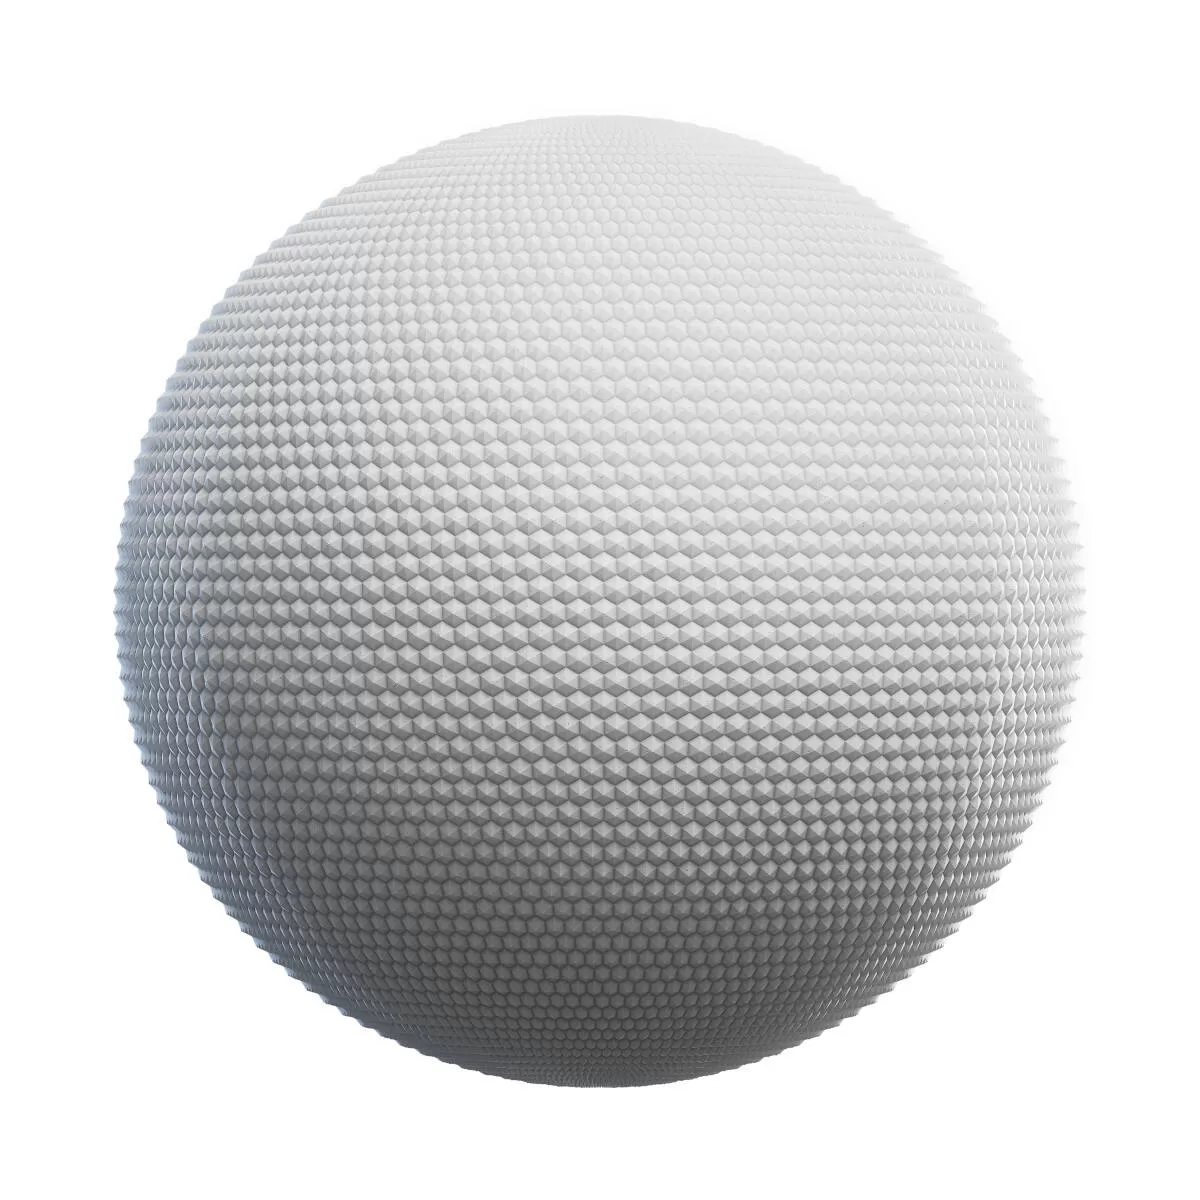 PBR Textures Volume 44 – Plastic – 4K – 8K – hexagonal_patterned_white_plastic_41_25